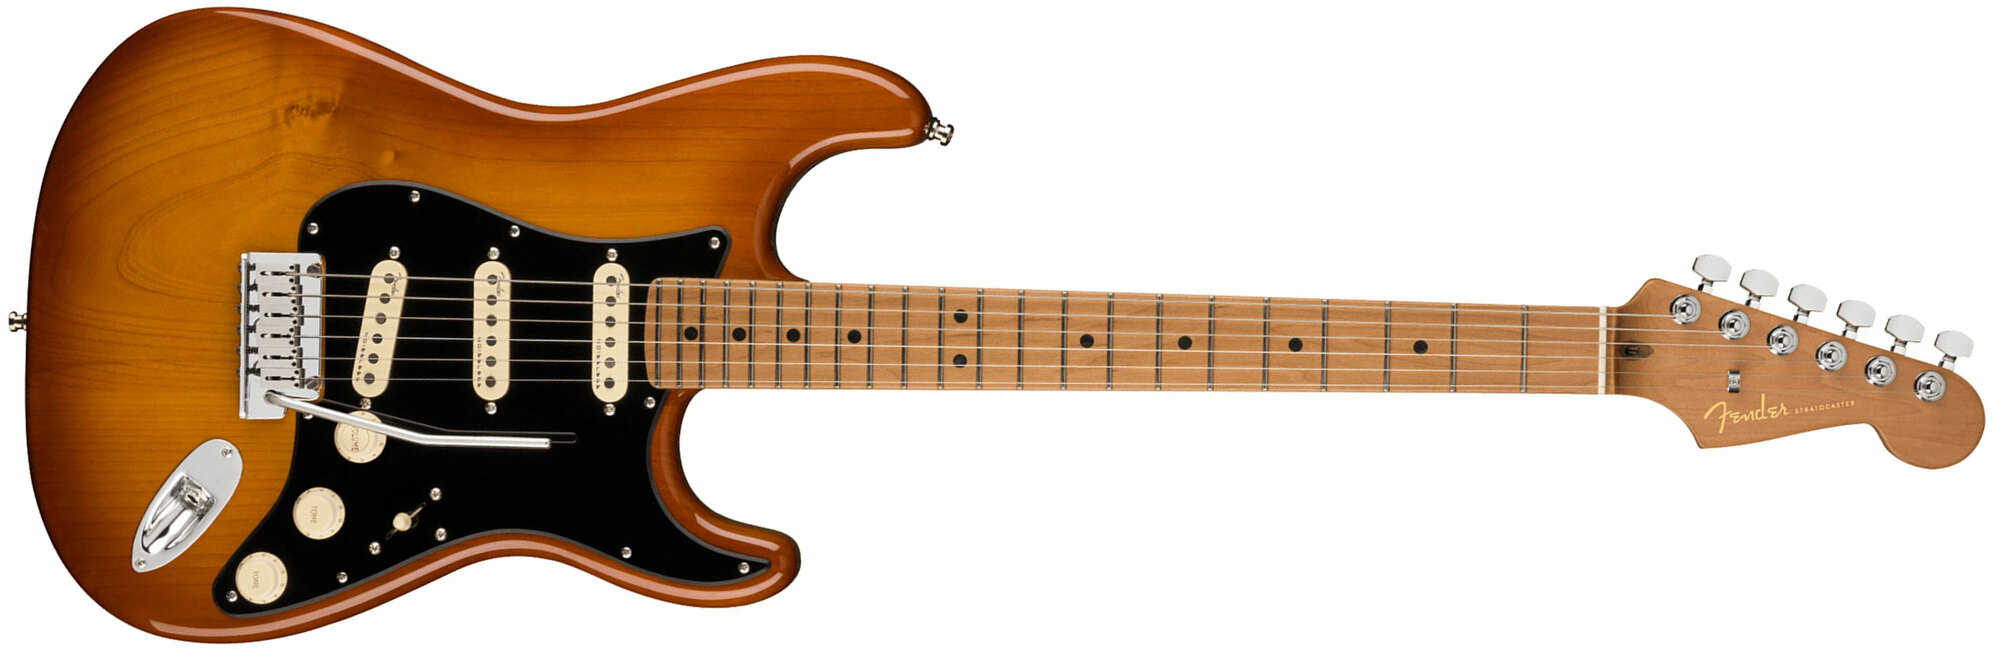 Fender Strat American Ultra Roasted Fretboard Ltd Usa 3s Trem Mn - Honey Burst - Guitare Électrique Forme Str - Main picture